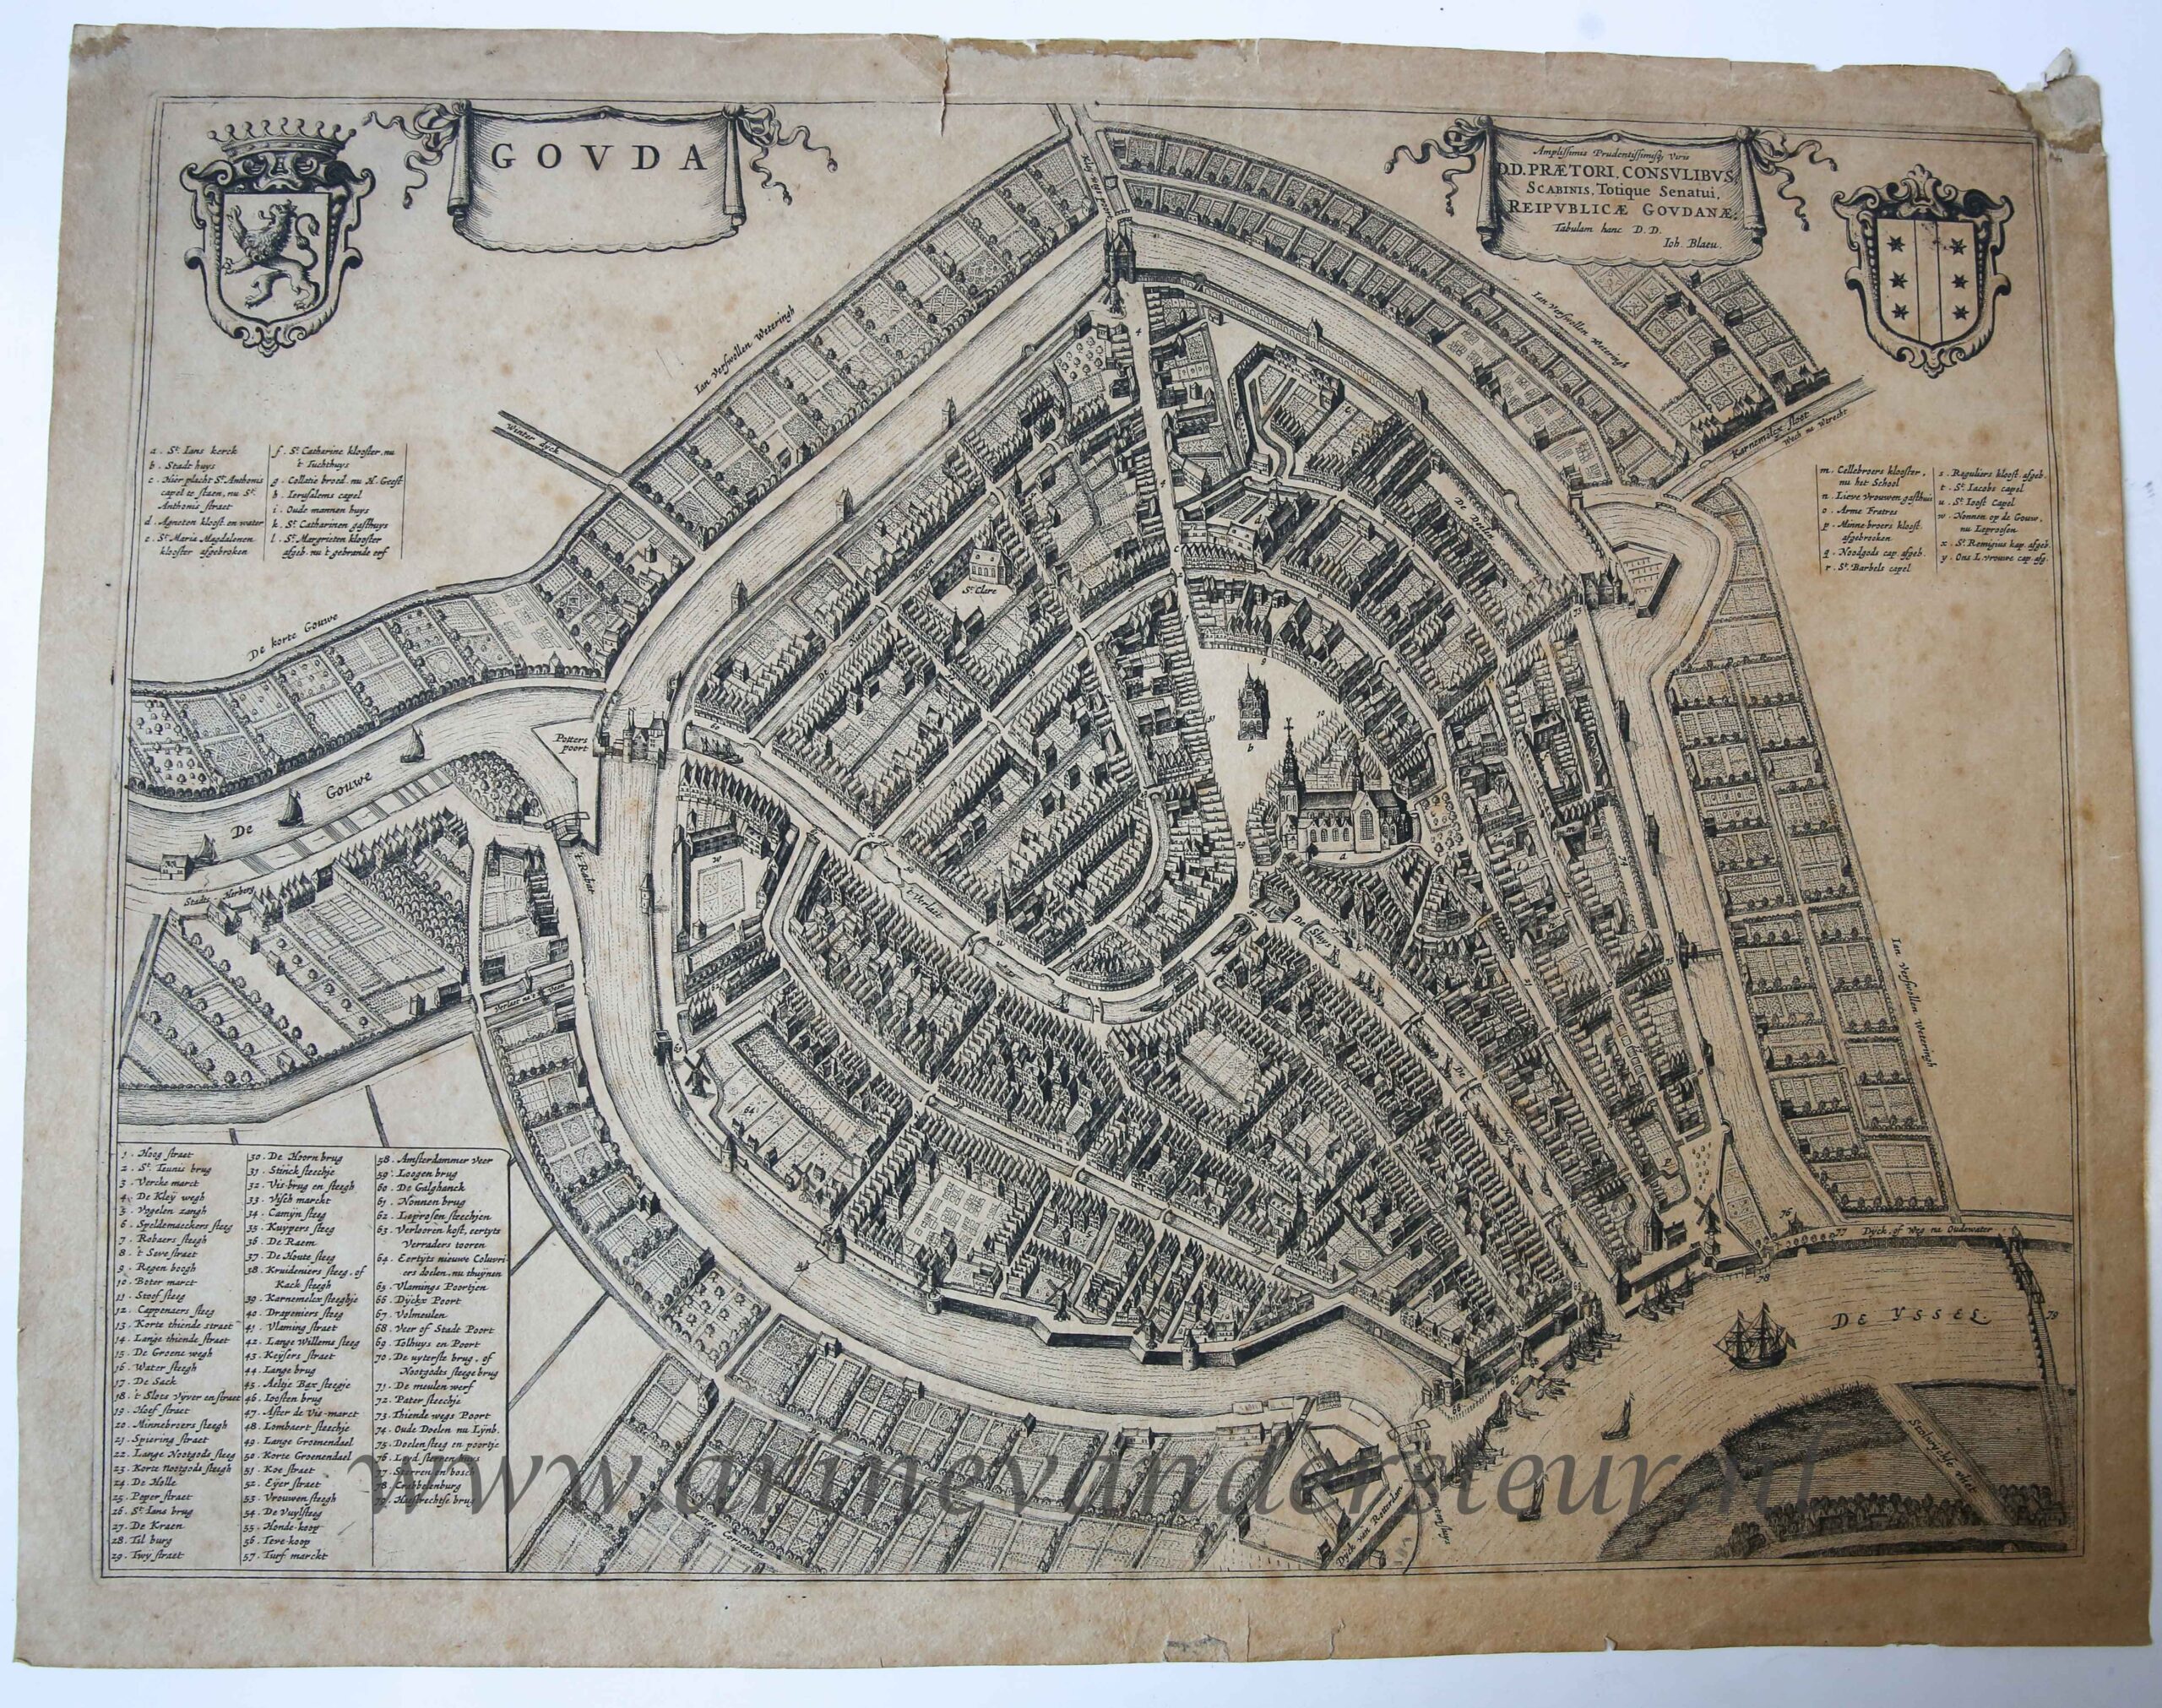 [Antique print, engraving] GOVDA (plattegrond, kaart van Gouda), published 1649 or after 1674.